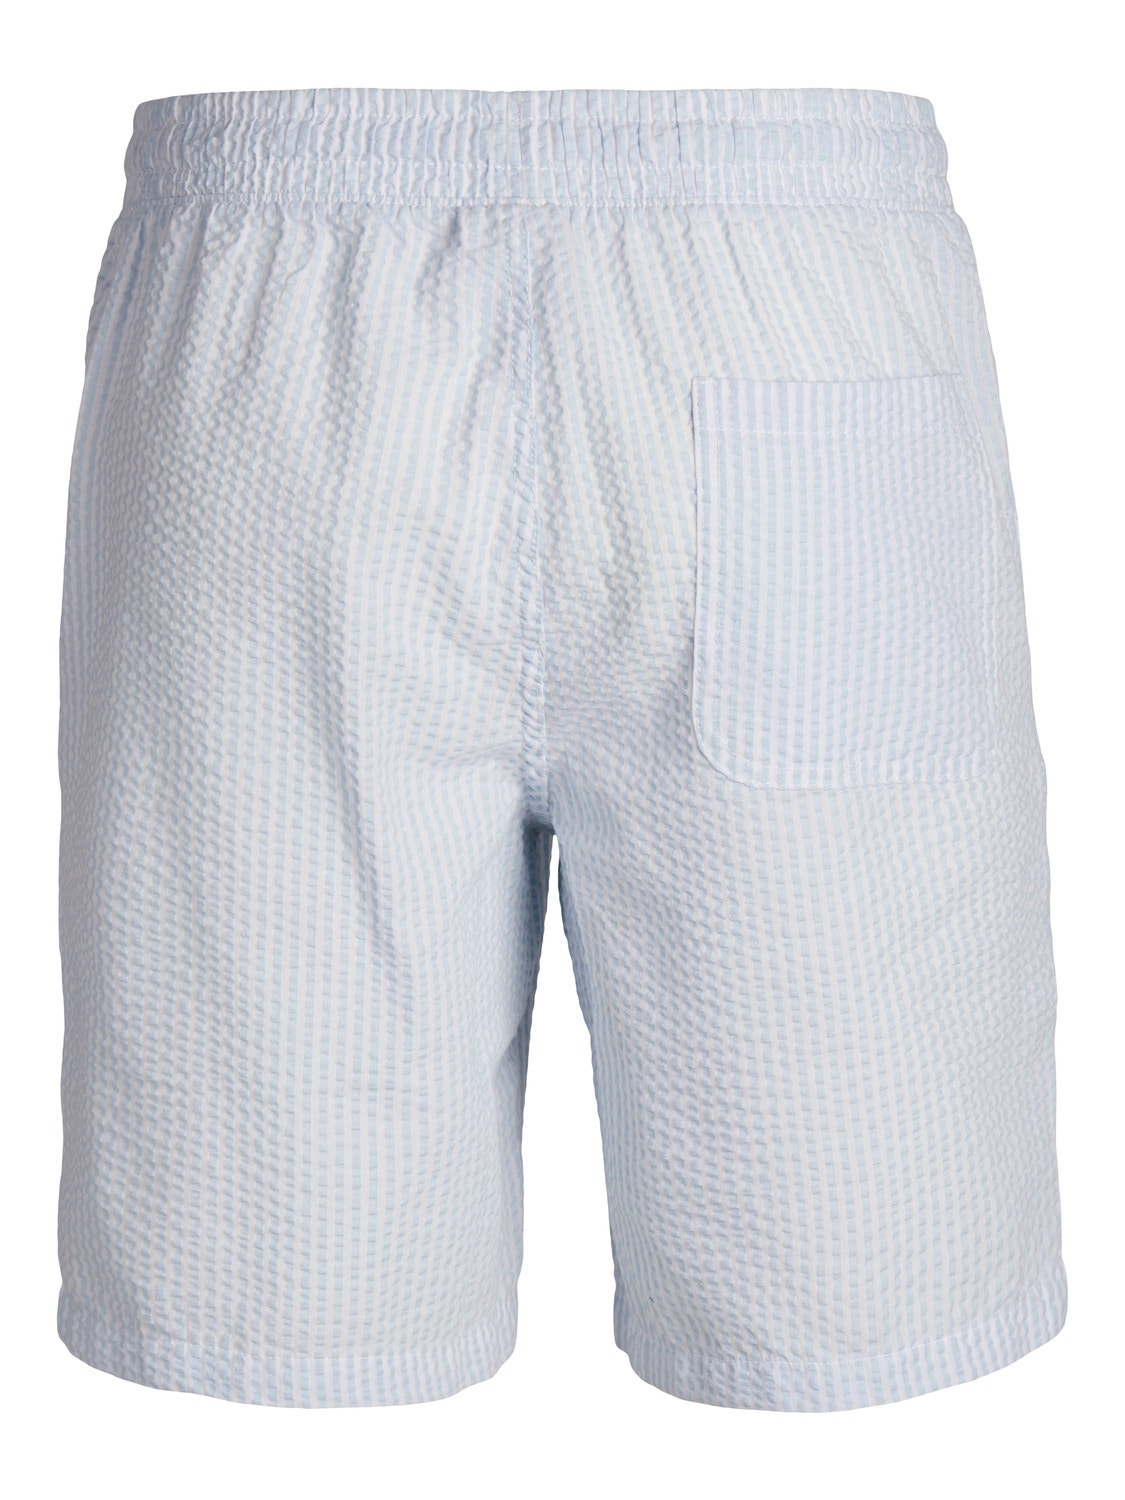 Jack & Jones Jogger Fit Shorts -Cashmere Blue - 12253151